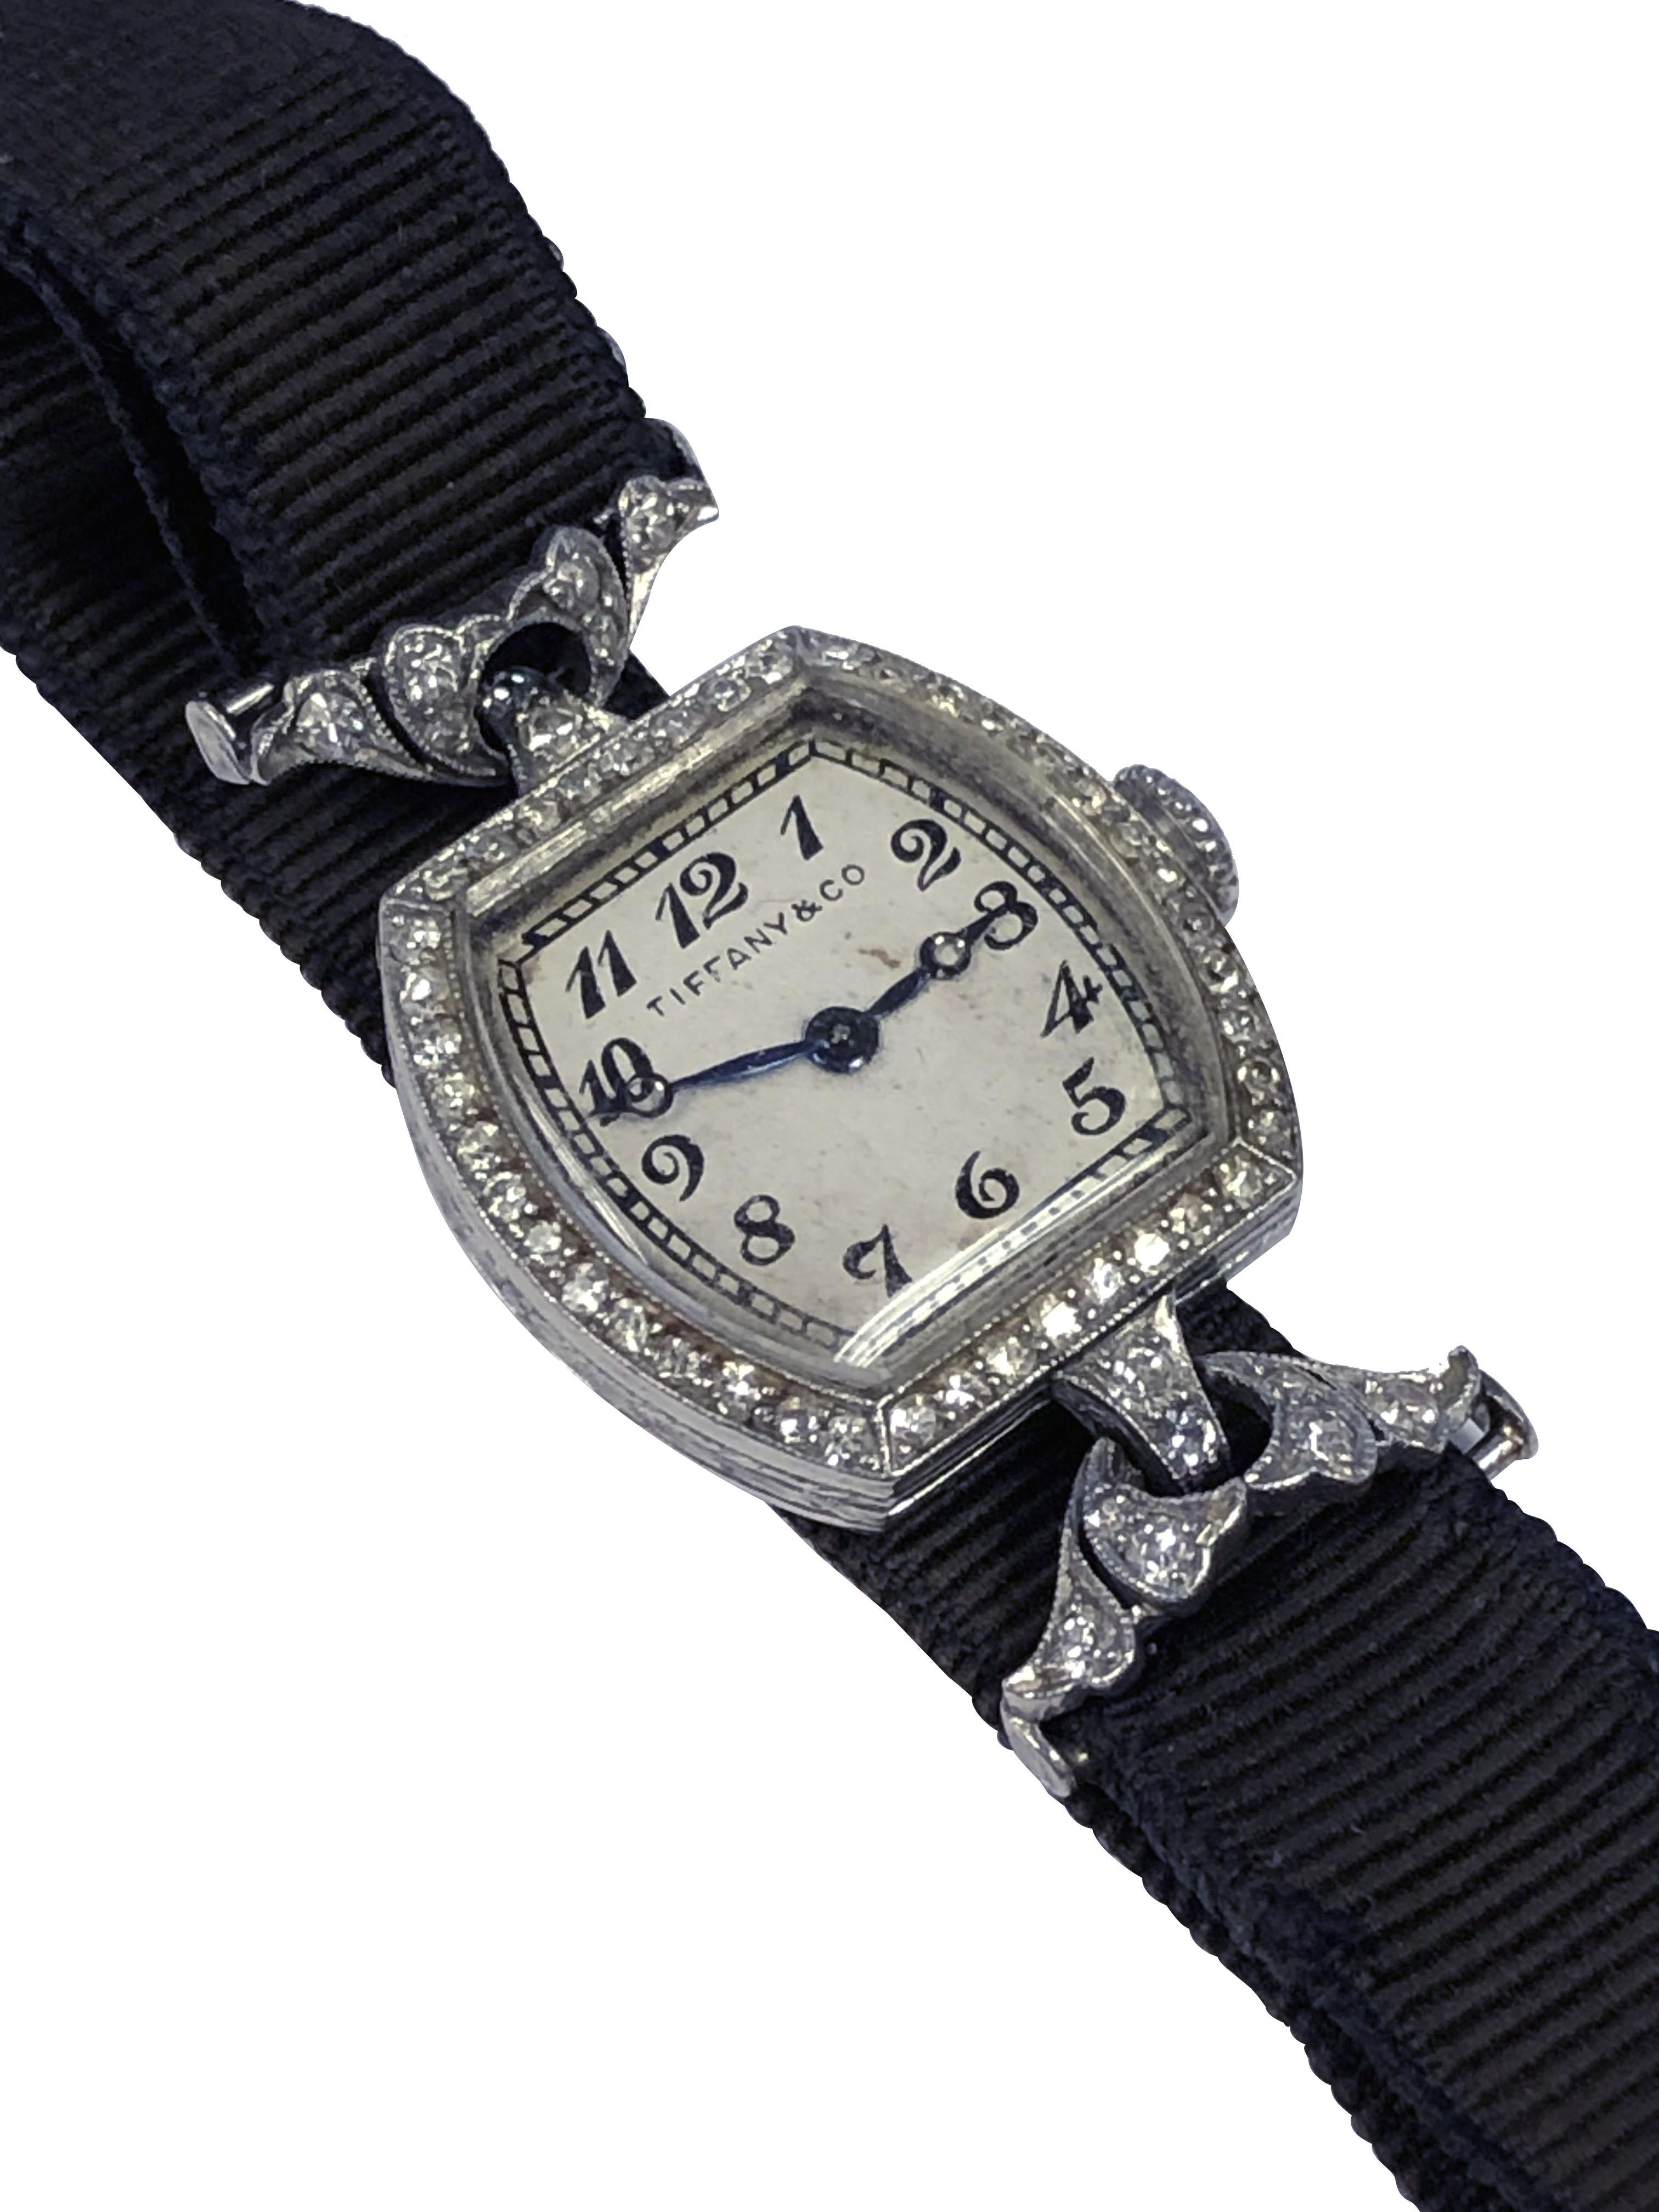 Vers 1920, Tiffany & Company a vendu au détail une montre-bracelet pour dames en platine et diamants, 18 x 18 M.M. Boîtier de forme coussin avec gravure à la main et diamants taille unique sertis dans la lunette. Les cornes flexibles serties de